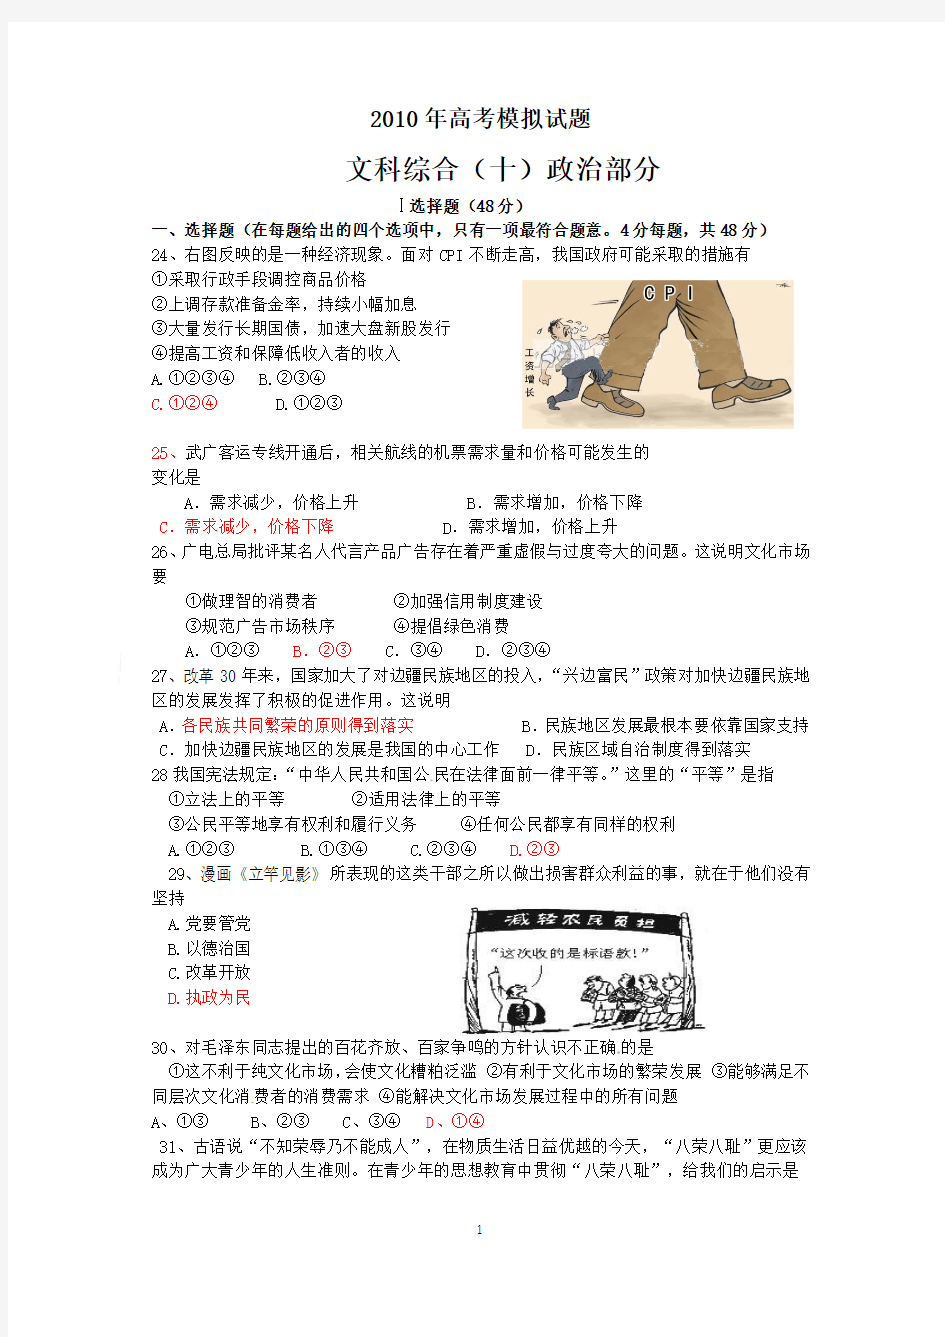 广东省中山市2010年高考模拟题文综政治10